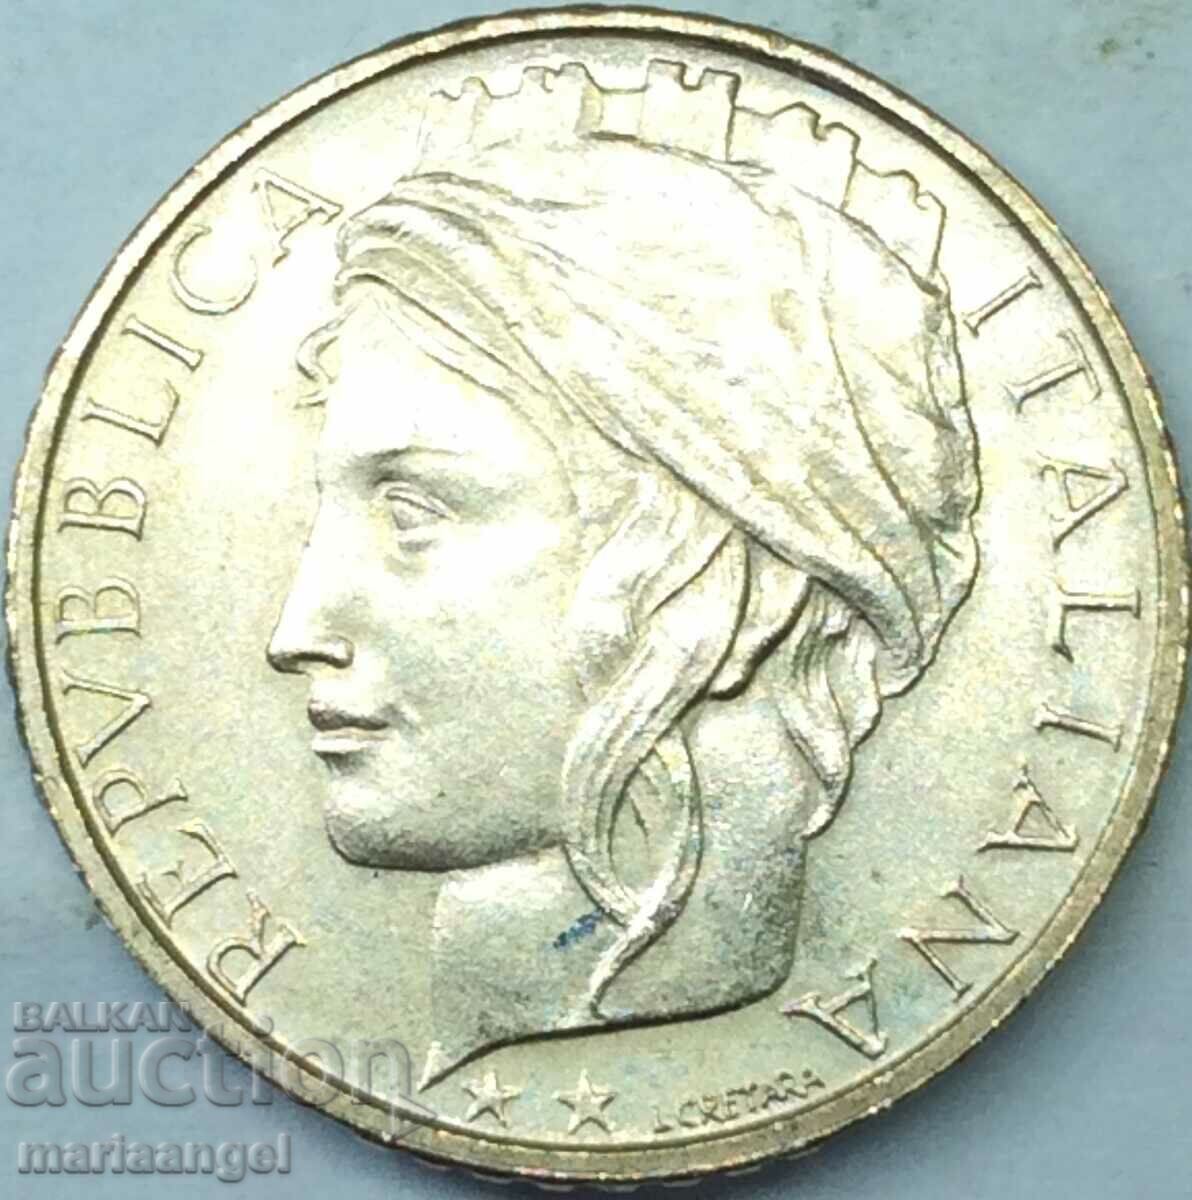 100 Lire 1997 Italy